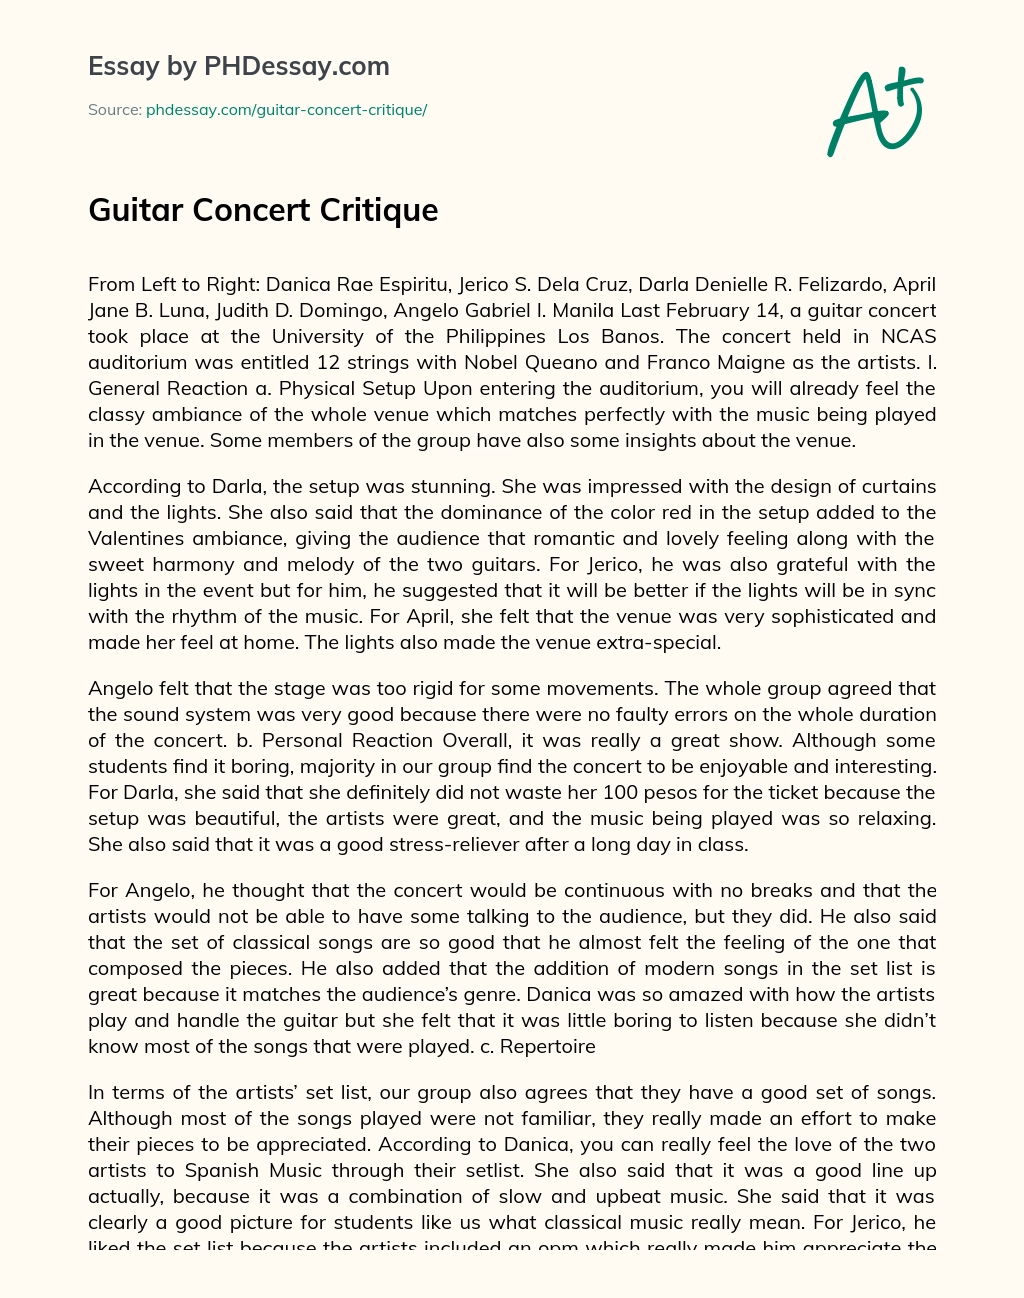 Guitar Concert Critique essay